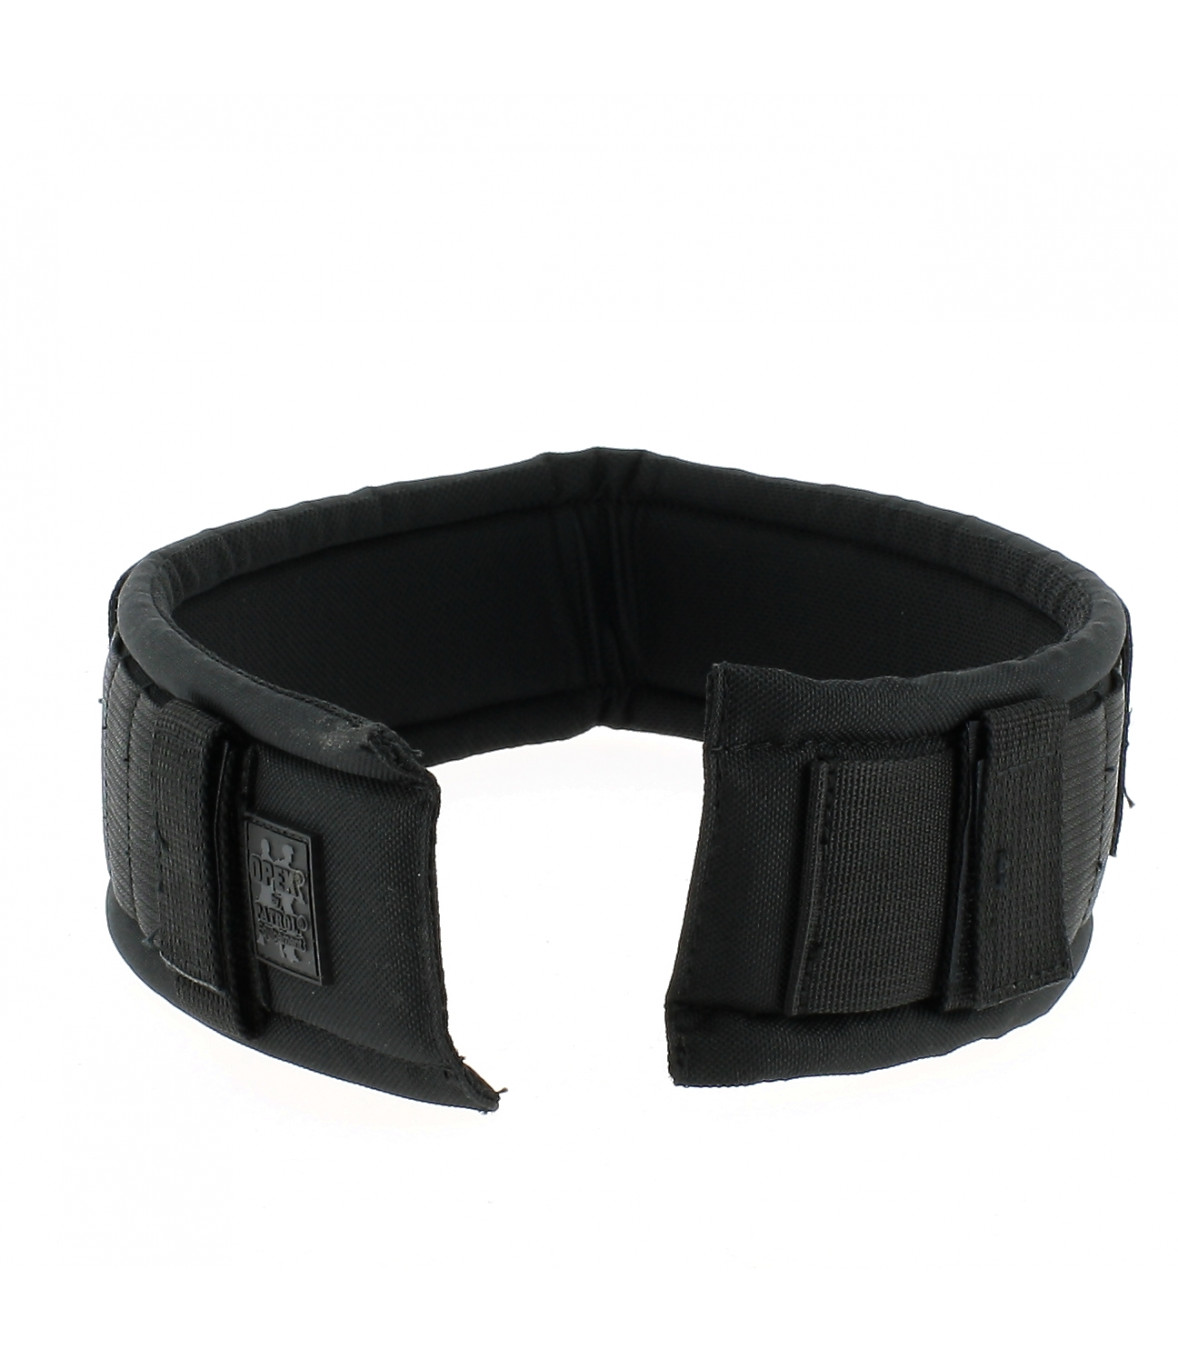 Porte gants pour ceinture et ceinturon 1680D - Armurerie Respect The Target  SARL